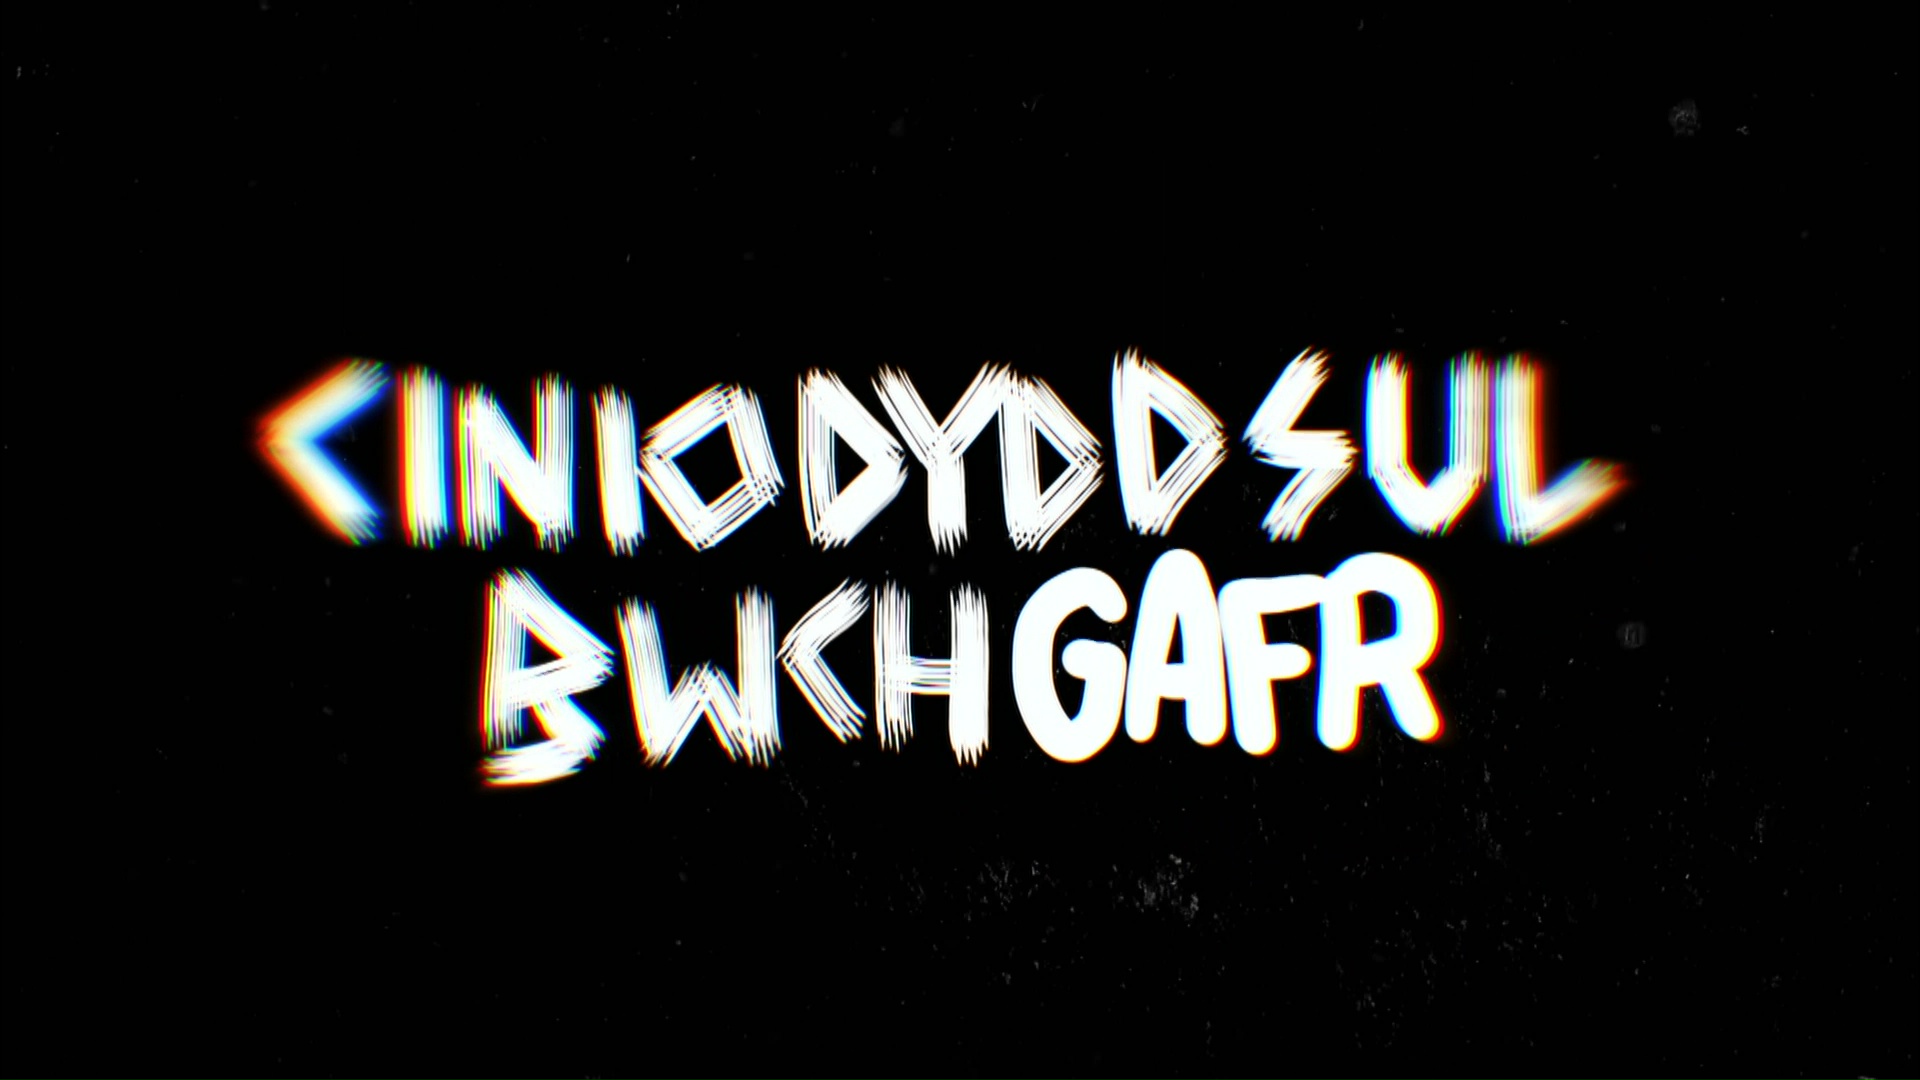 Cinio Dydd Sul Bwch Gafr